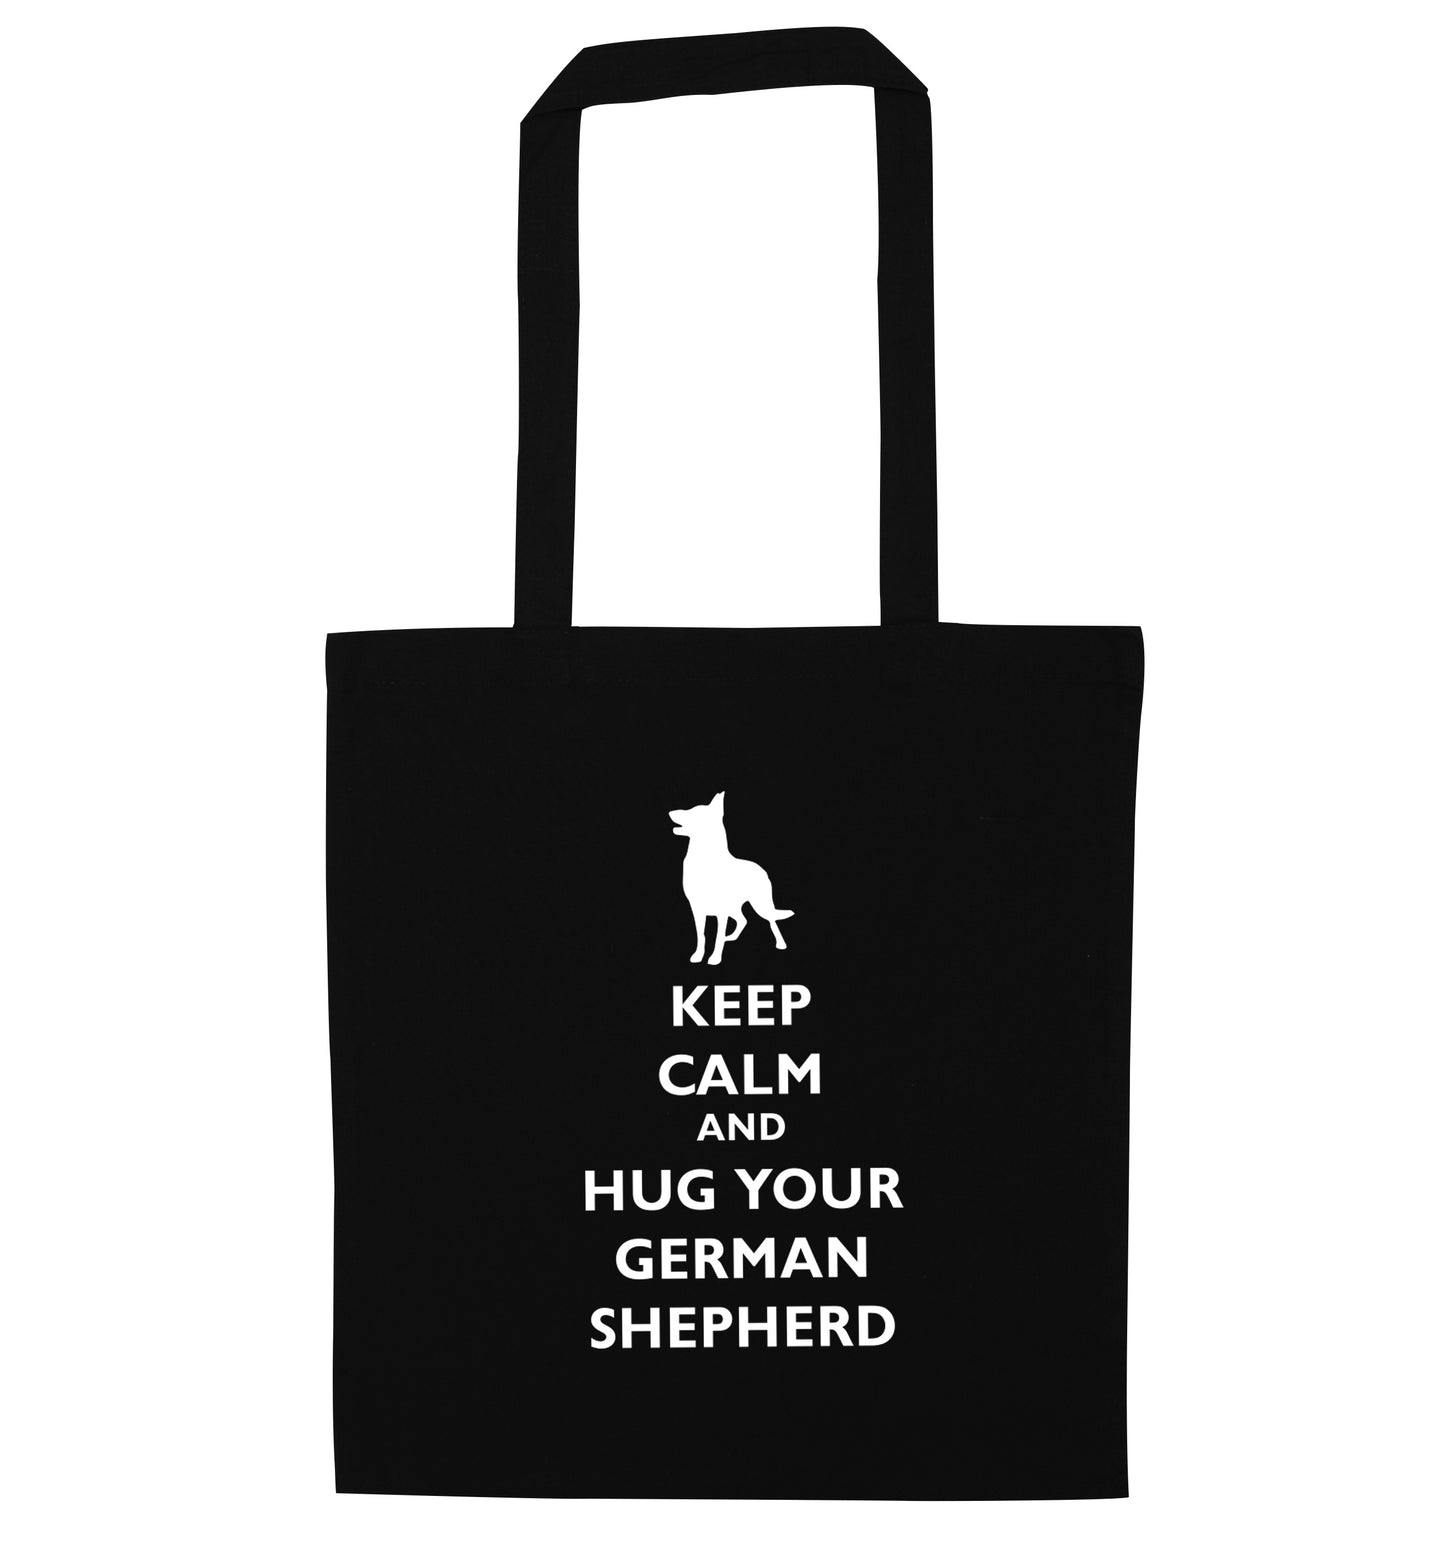 Keep calm and hug your german shepherd black tote bag